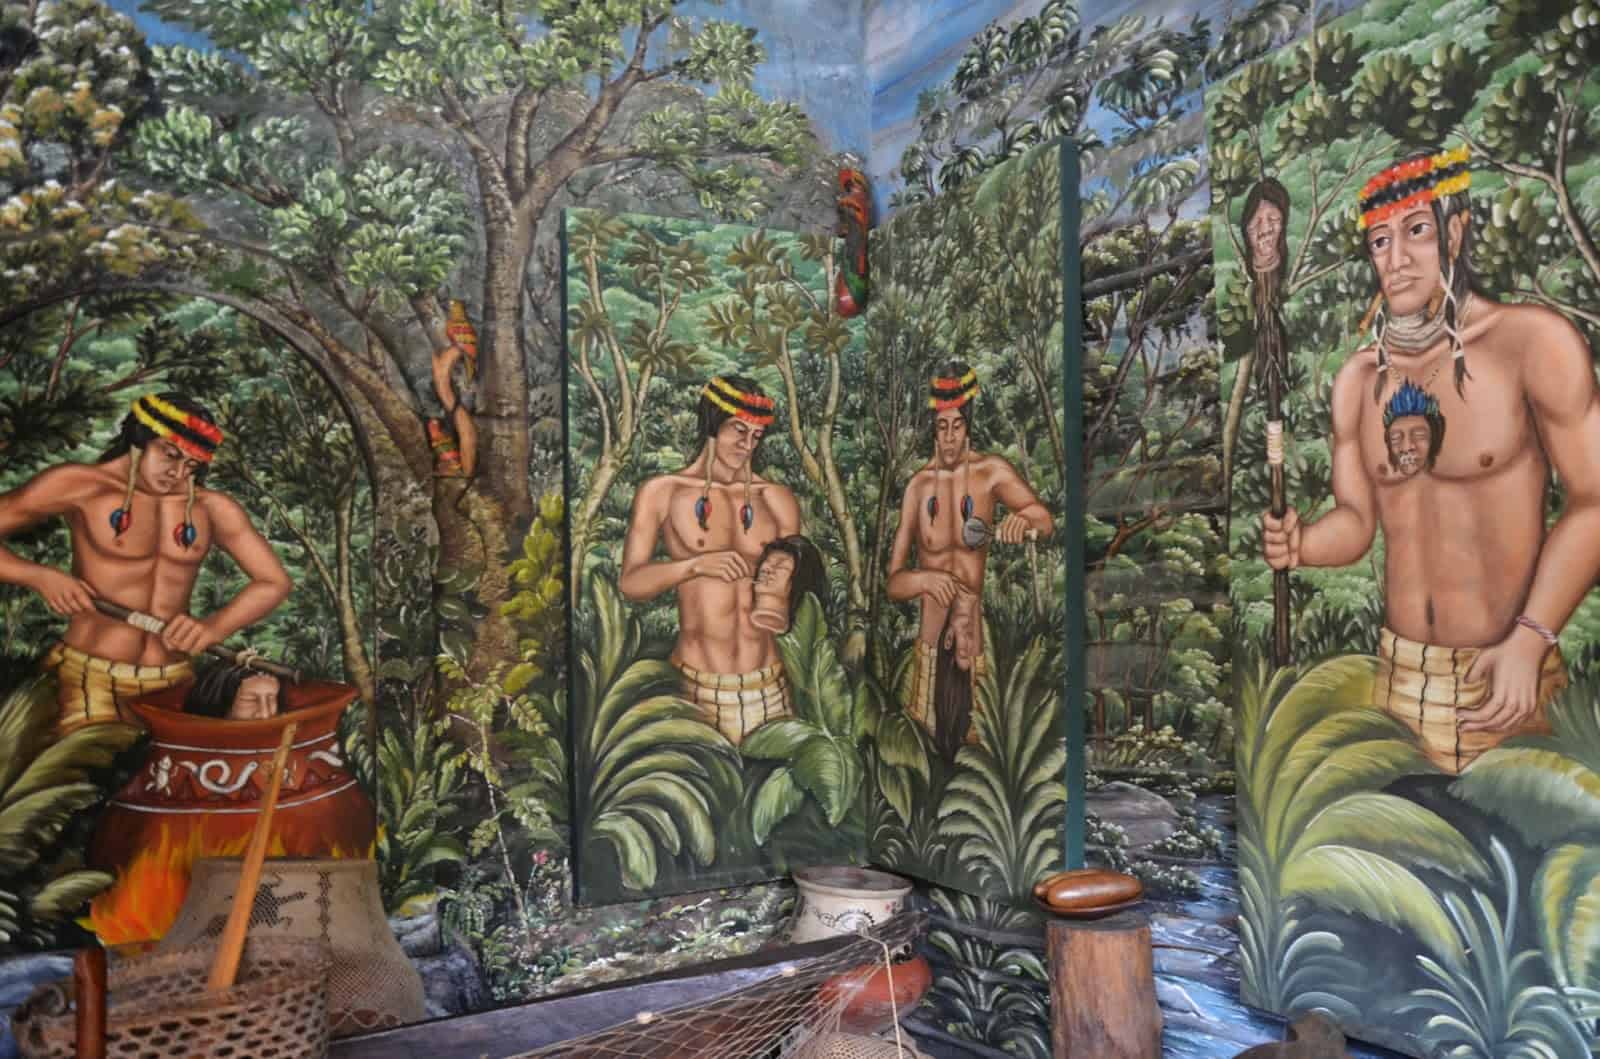 Ethnographic museum at Intiñan Museum at Mitad del Mundo in Ecuador